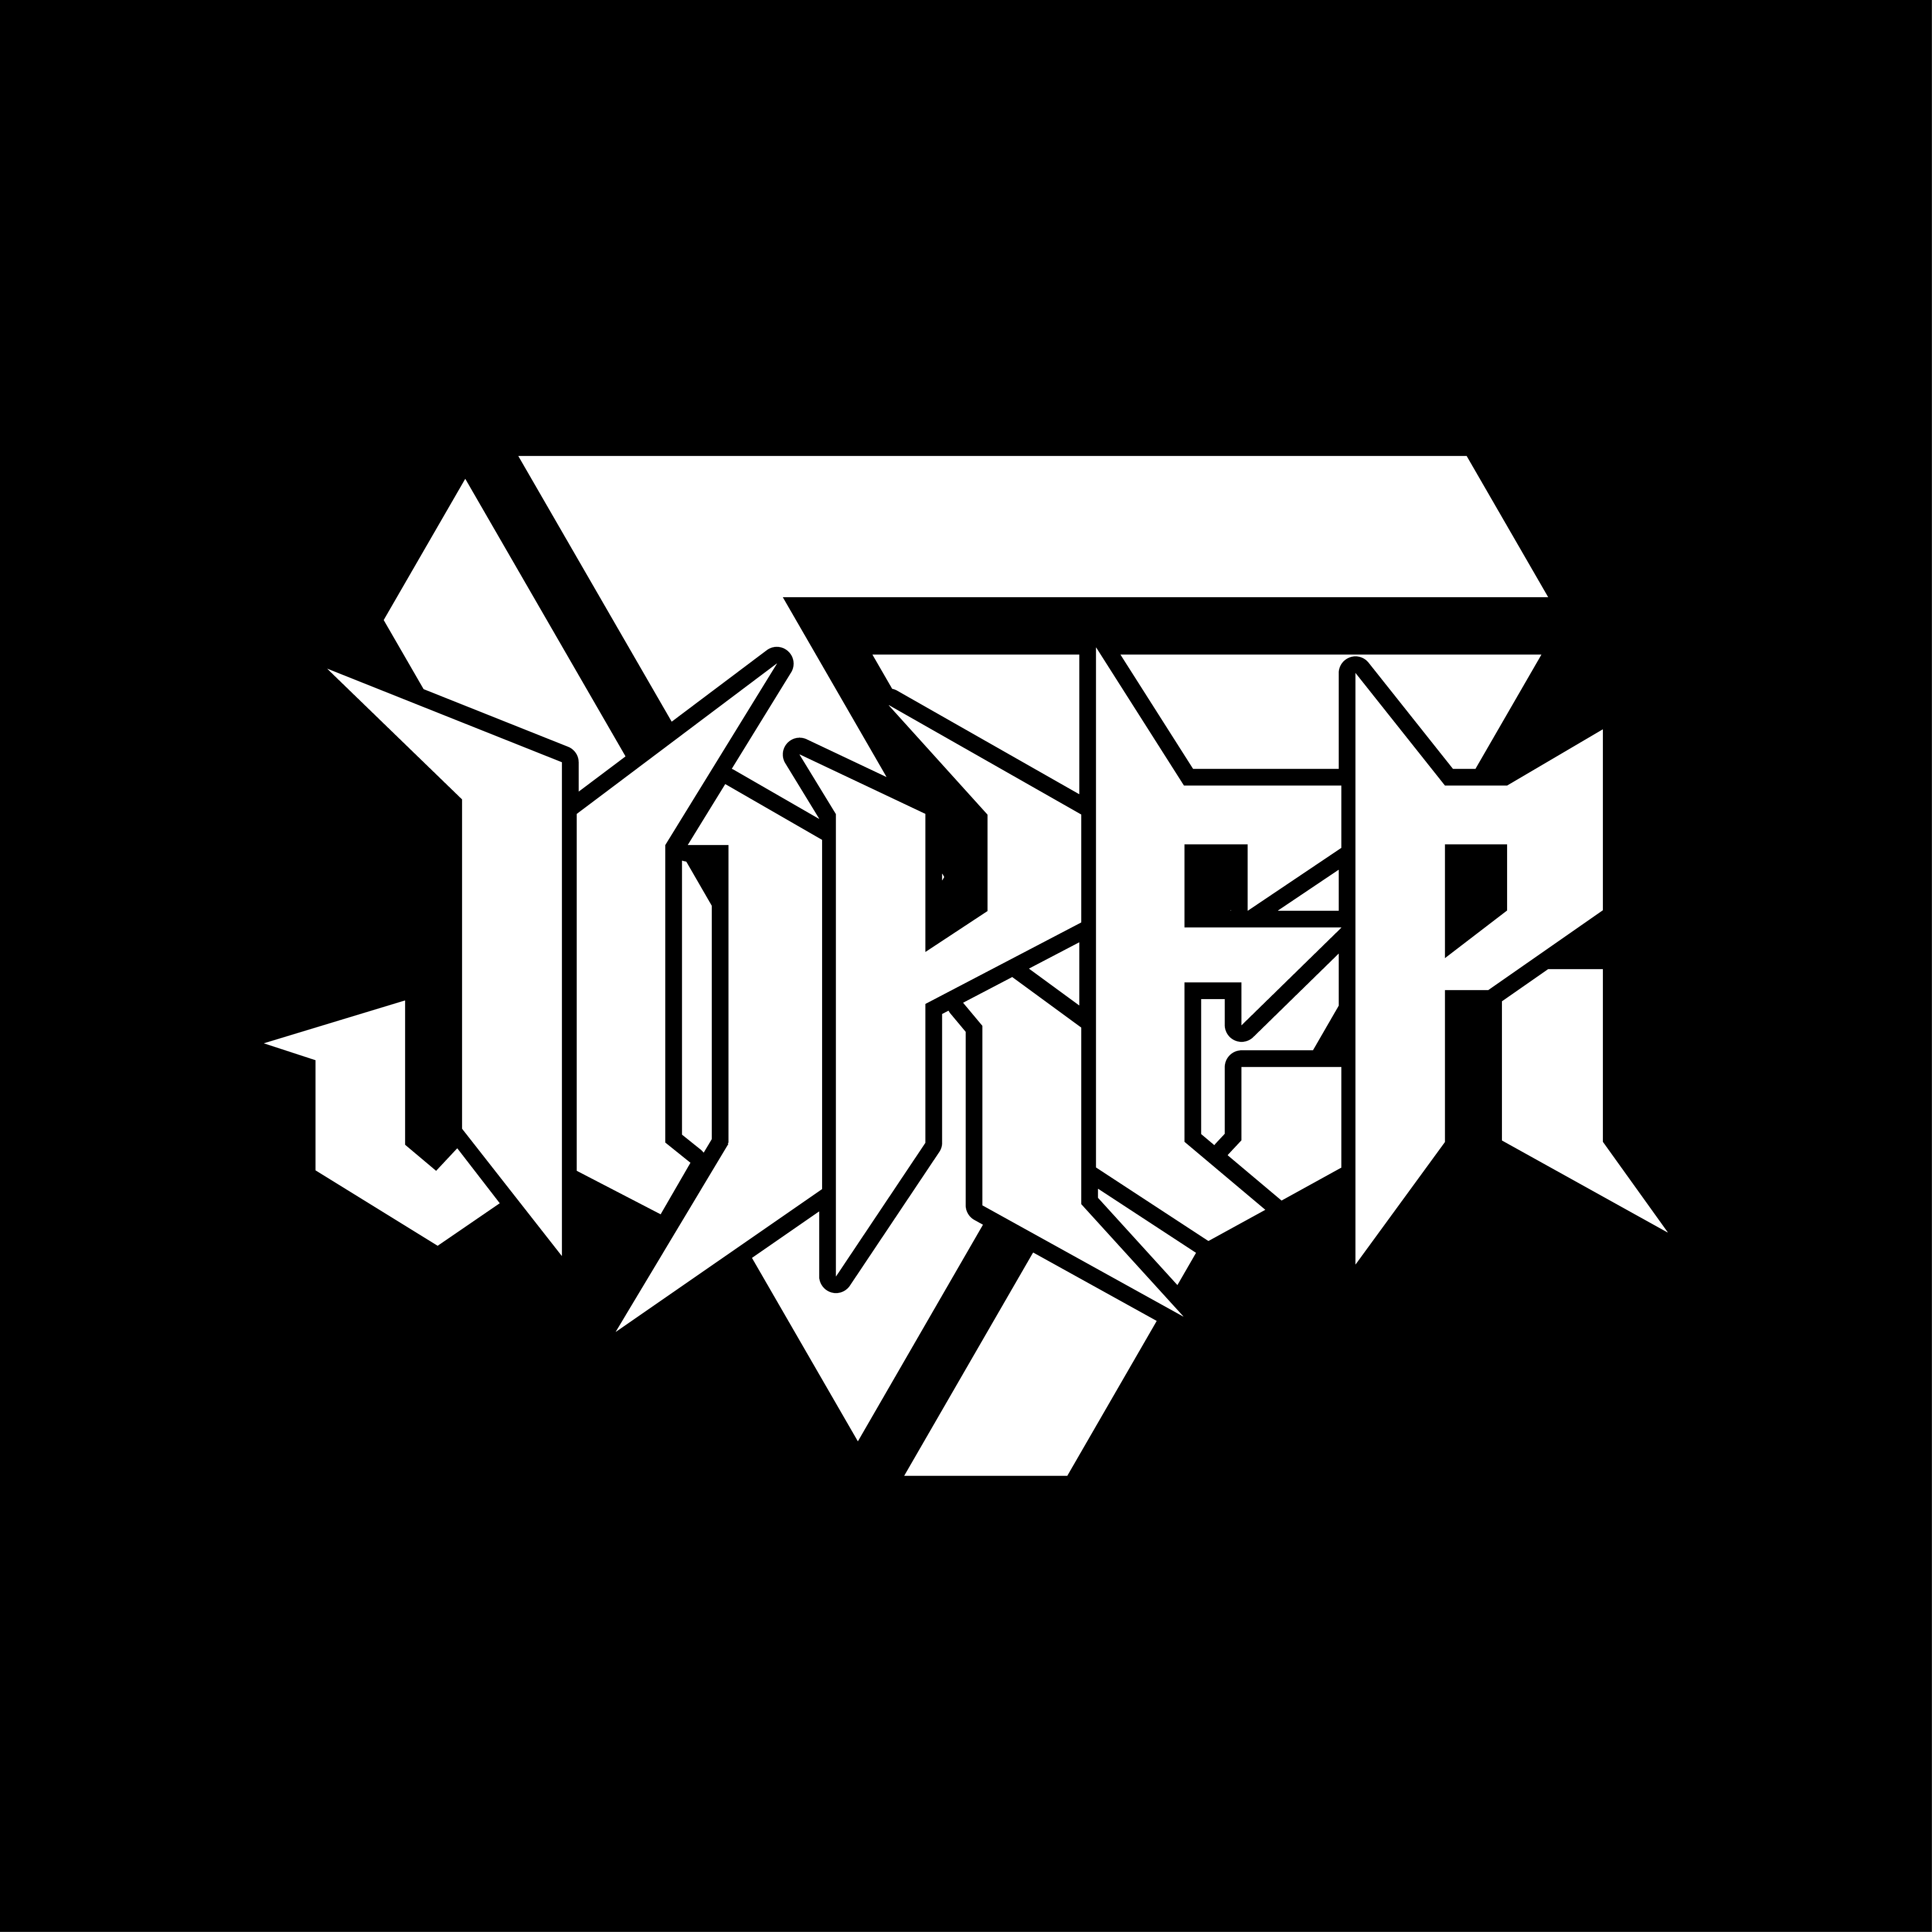 [02.26] 西安网红DJ Joker 11-12派对思路